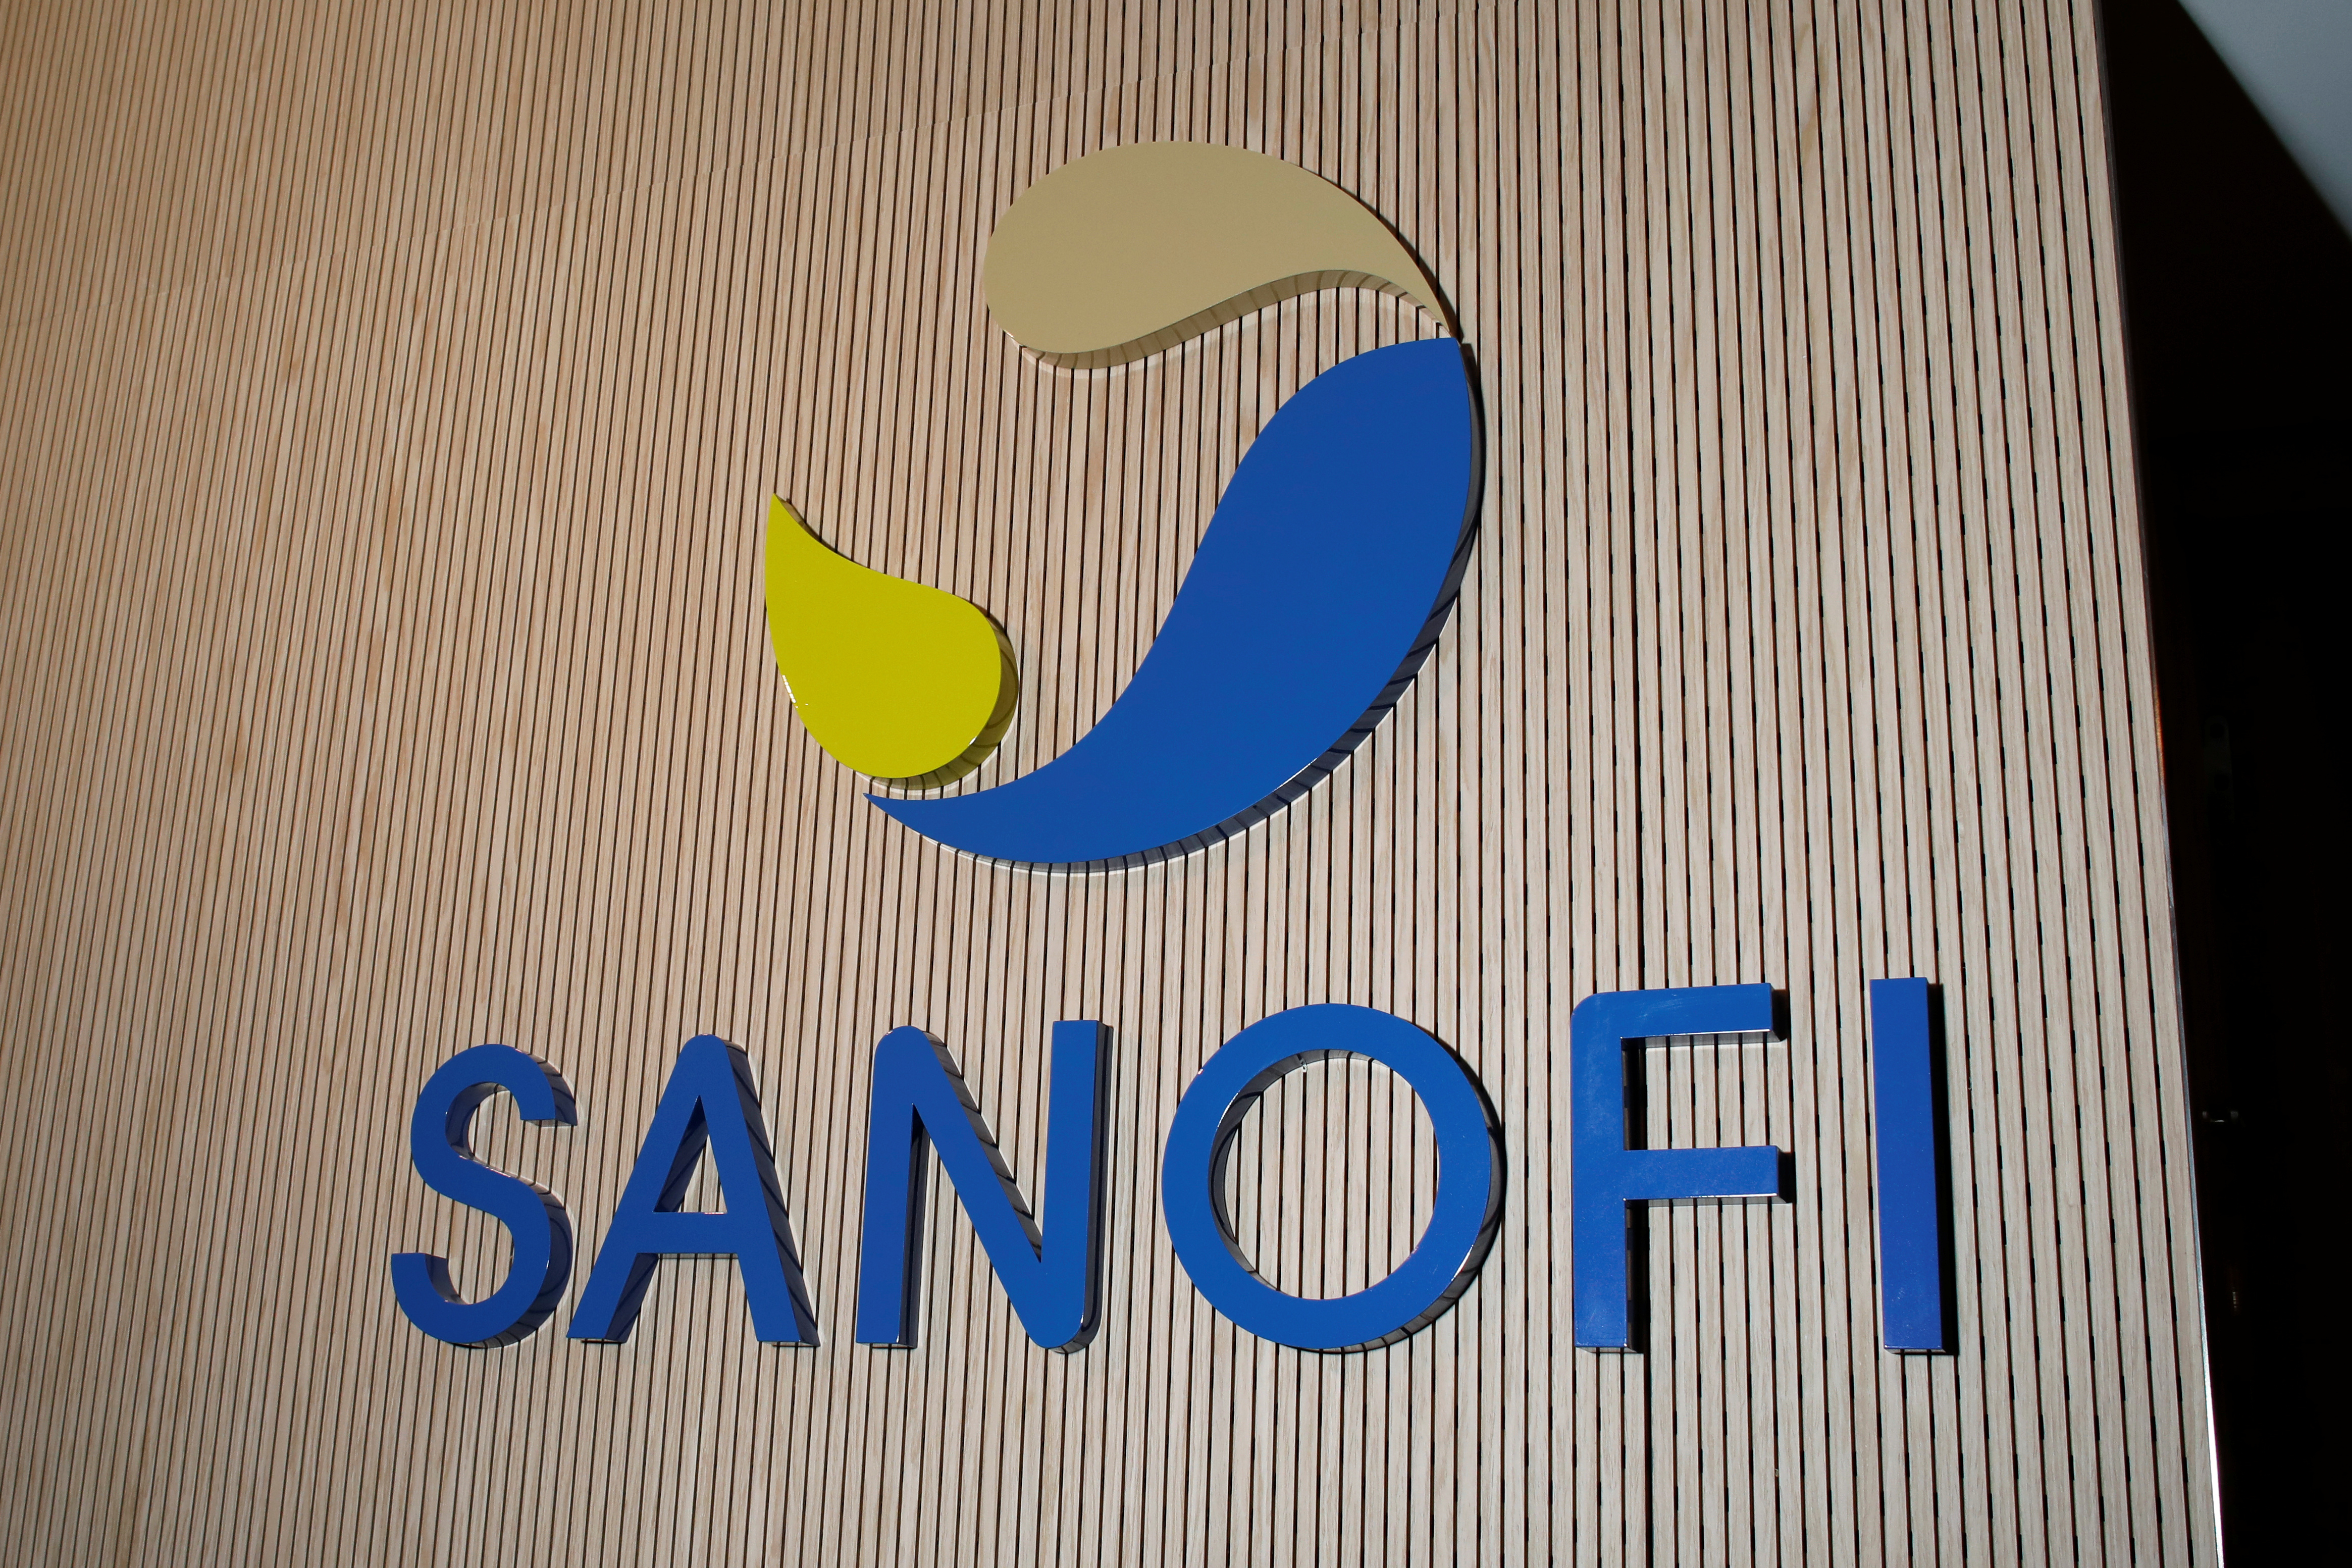 Sanofi annual results news conference in Paris